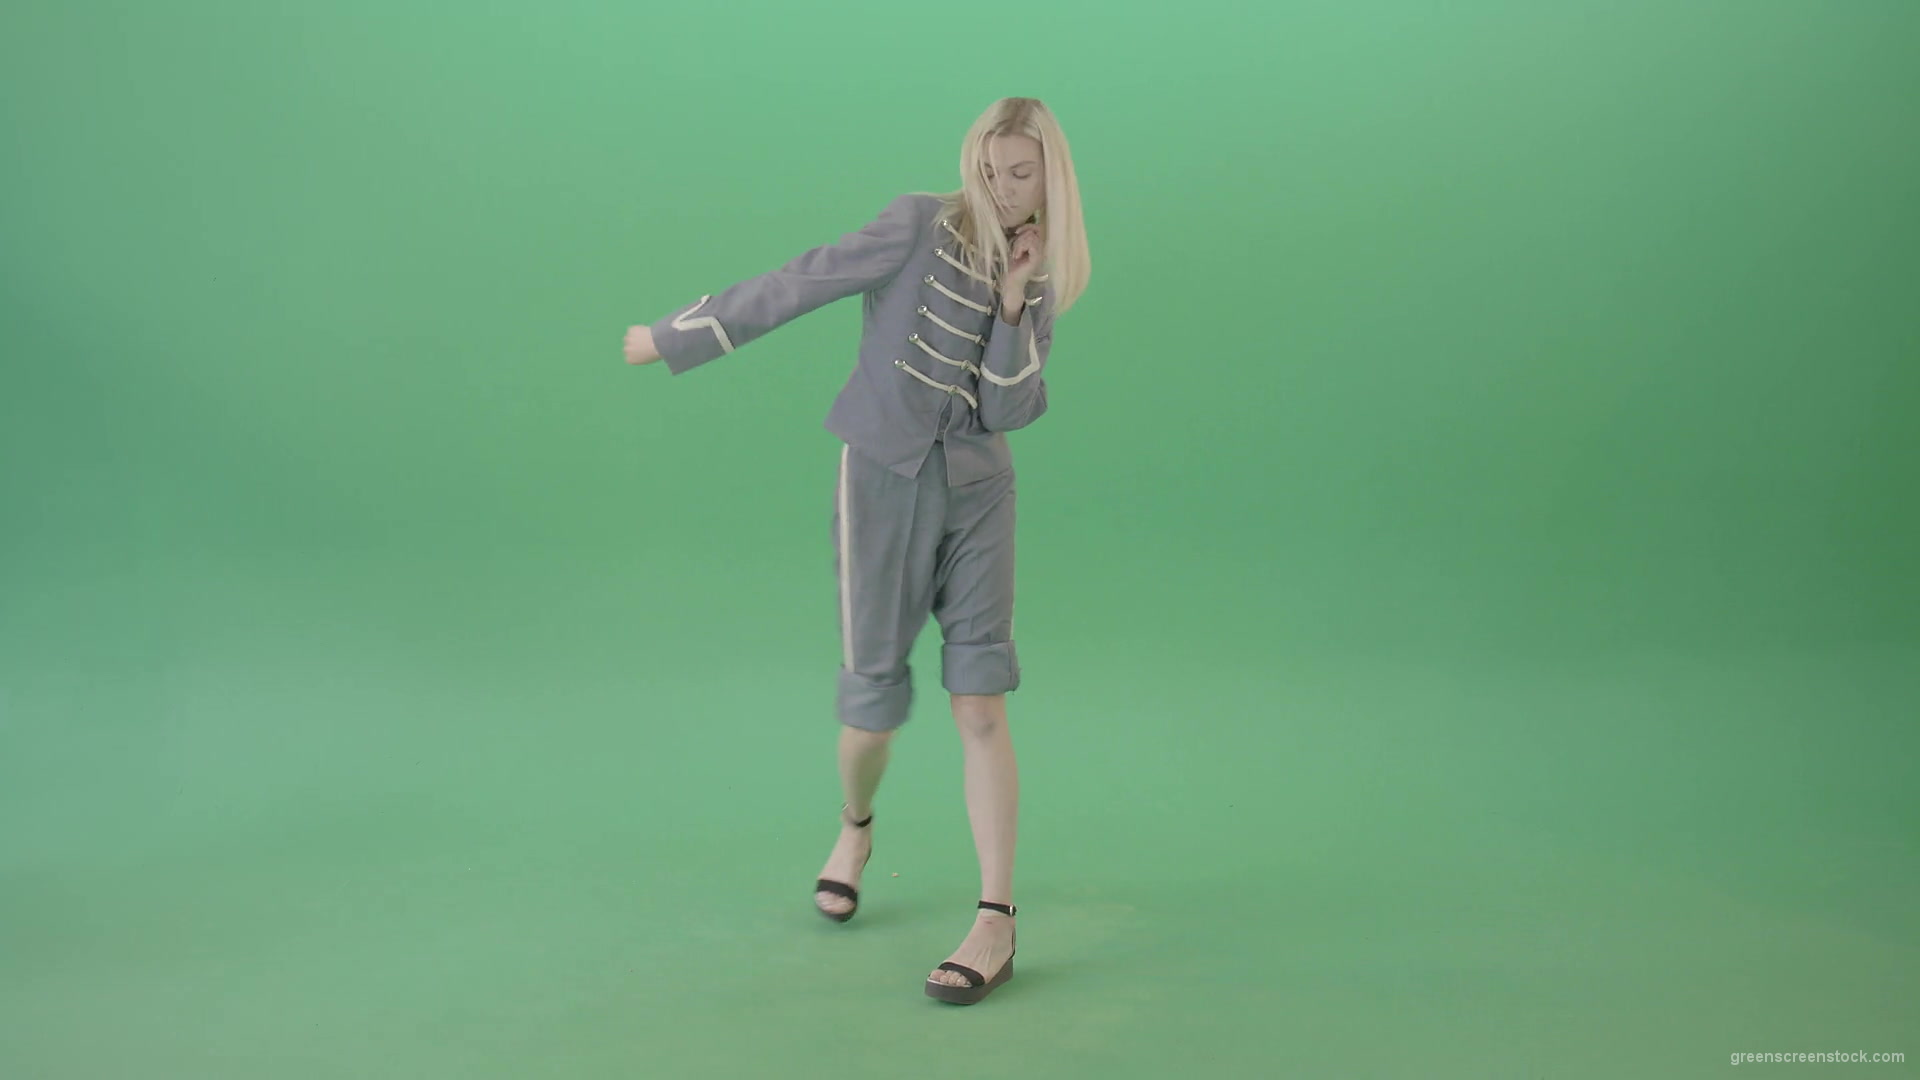 Techno-rave-blonde-girl-dancing-house-chill-isolated-on-green-screen-4K-Video-Footage-1920_006 Green Screen Stock